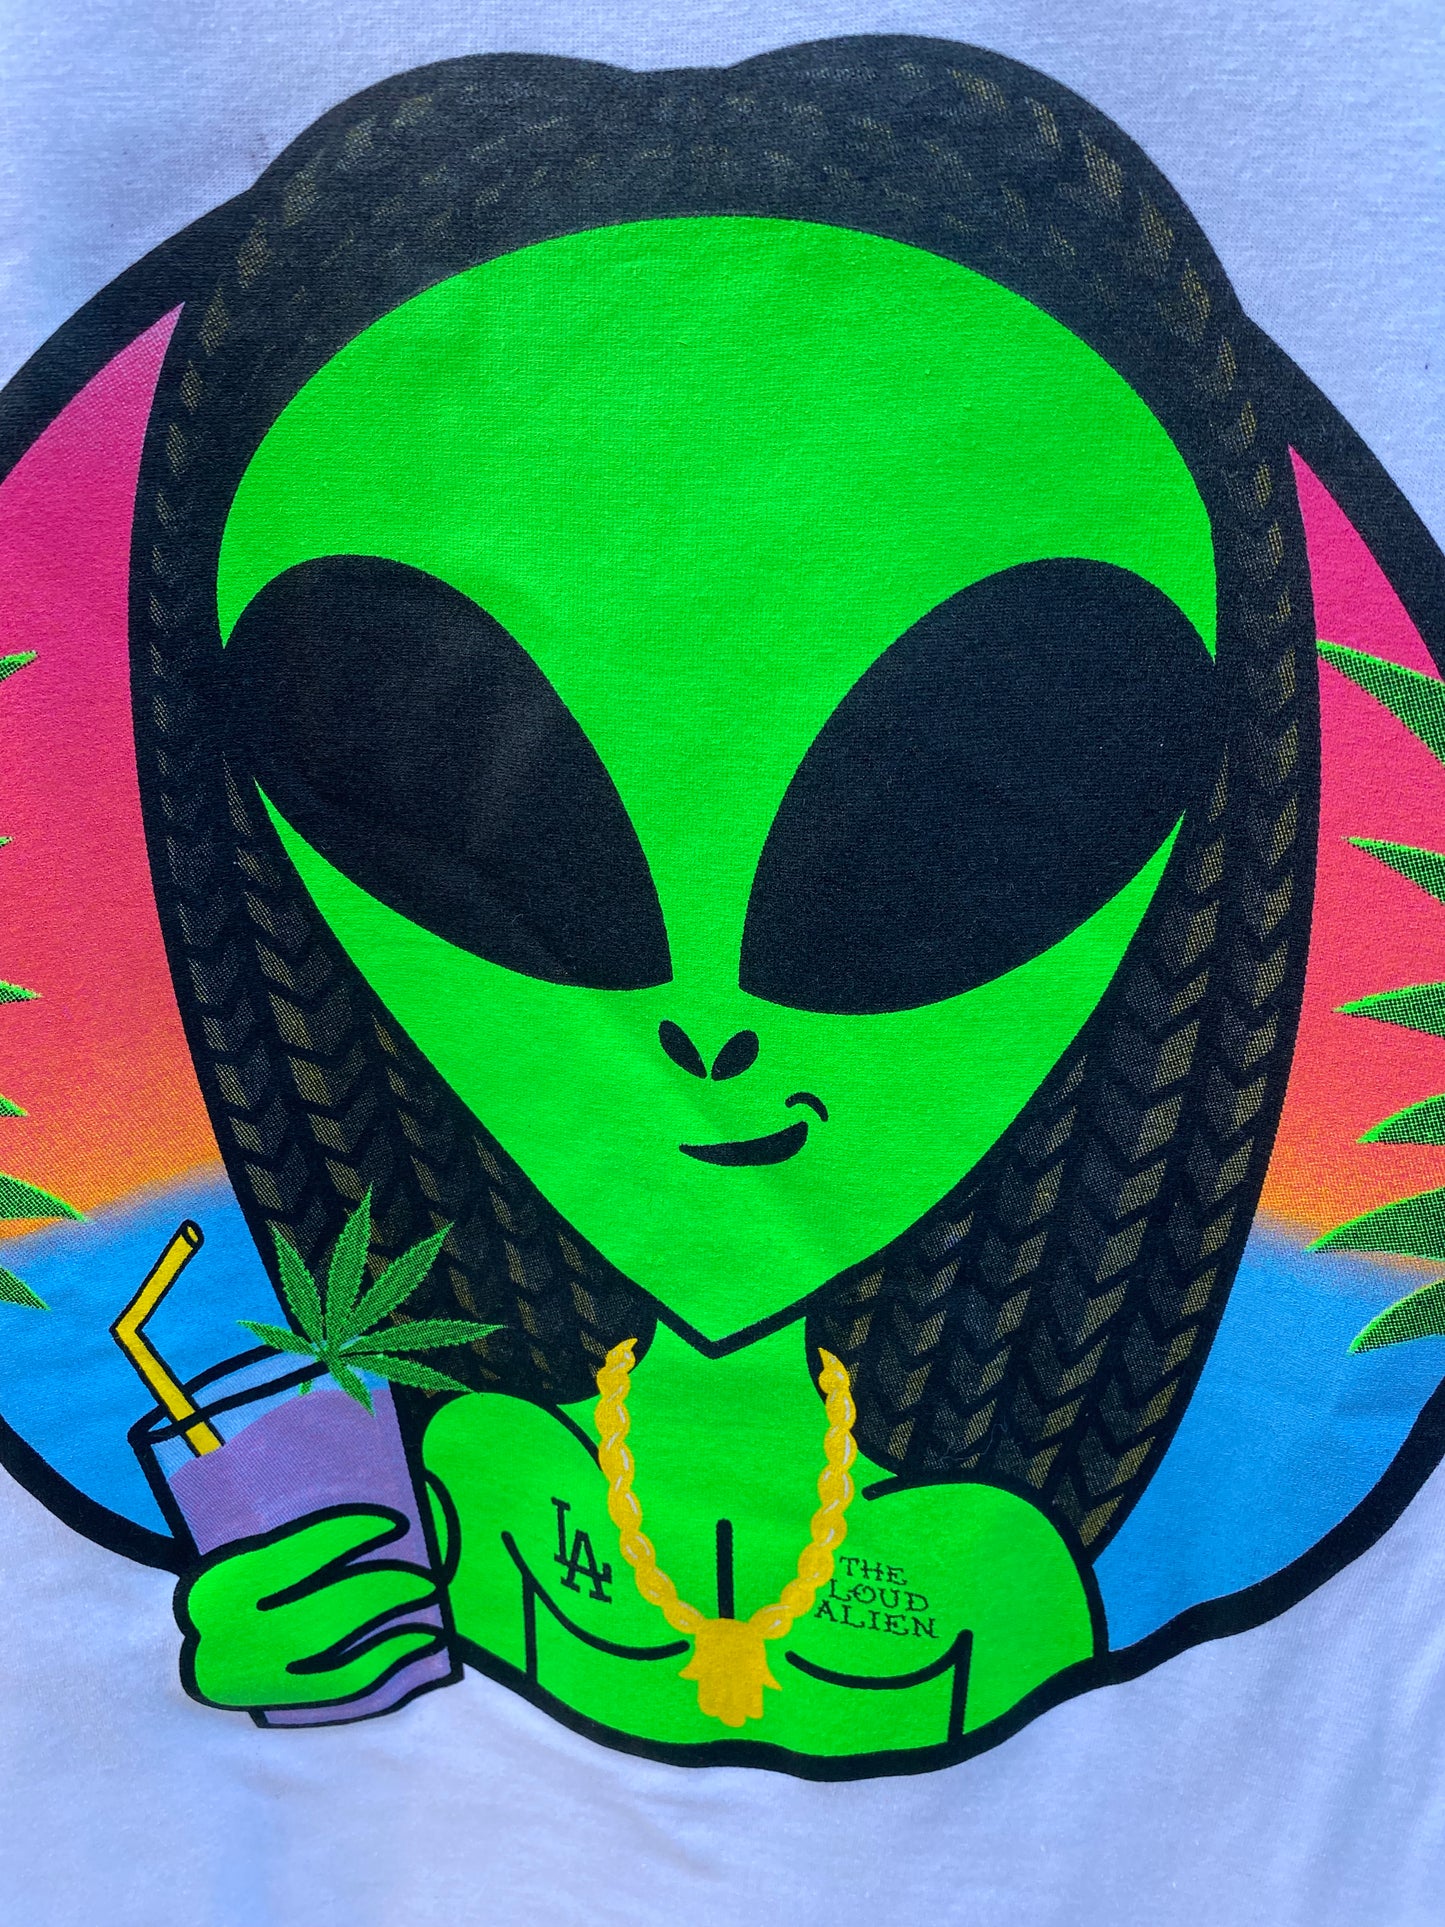 Loud Alien “Rasta Alien” Tee